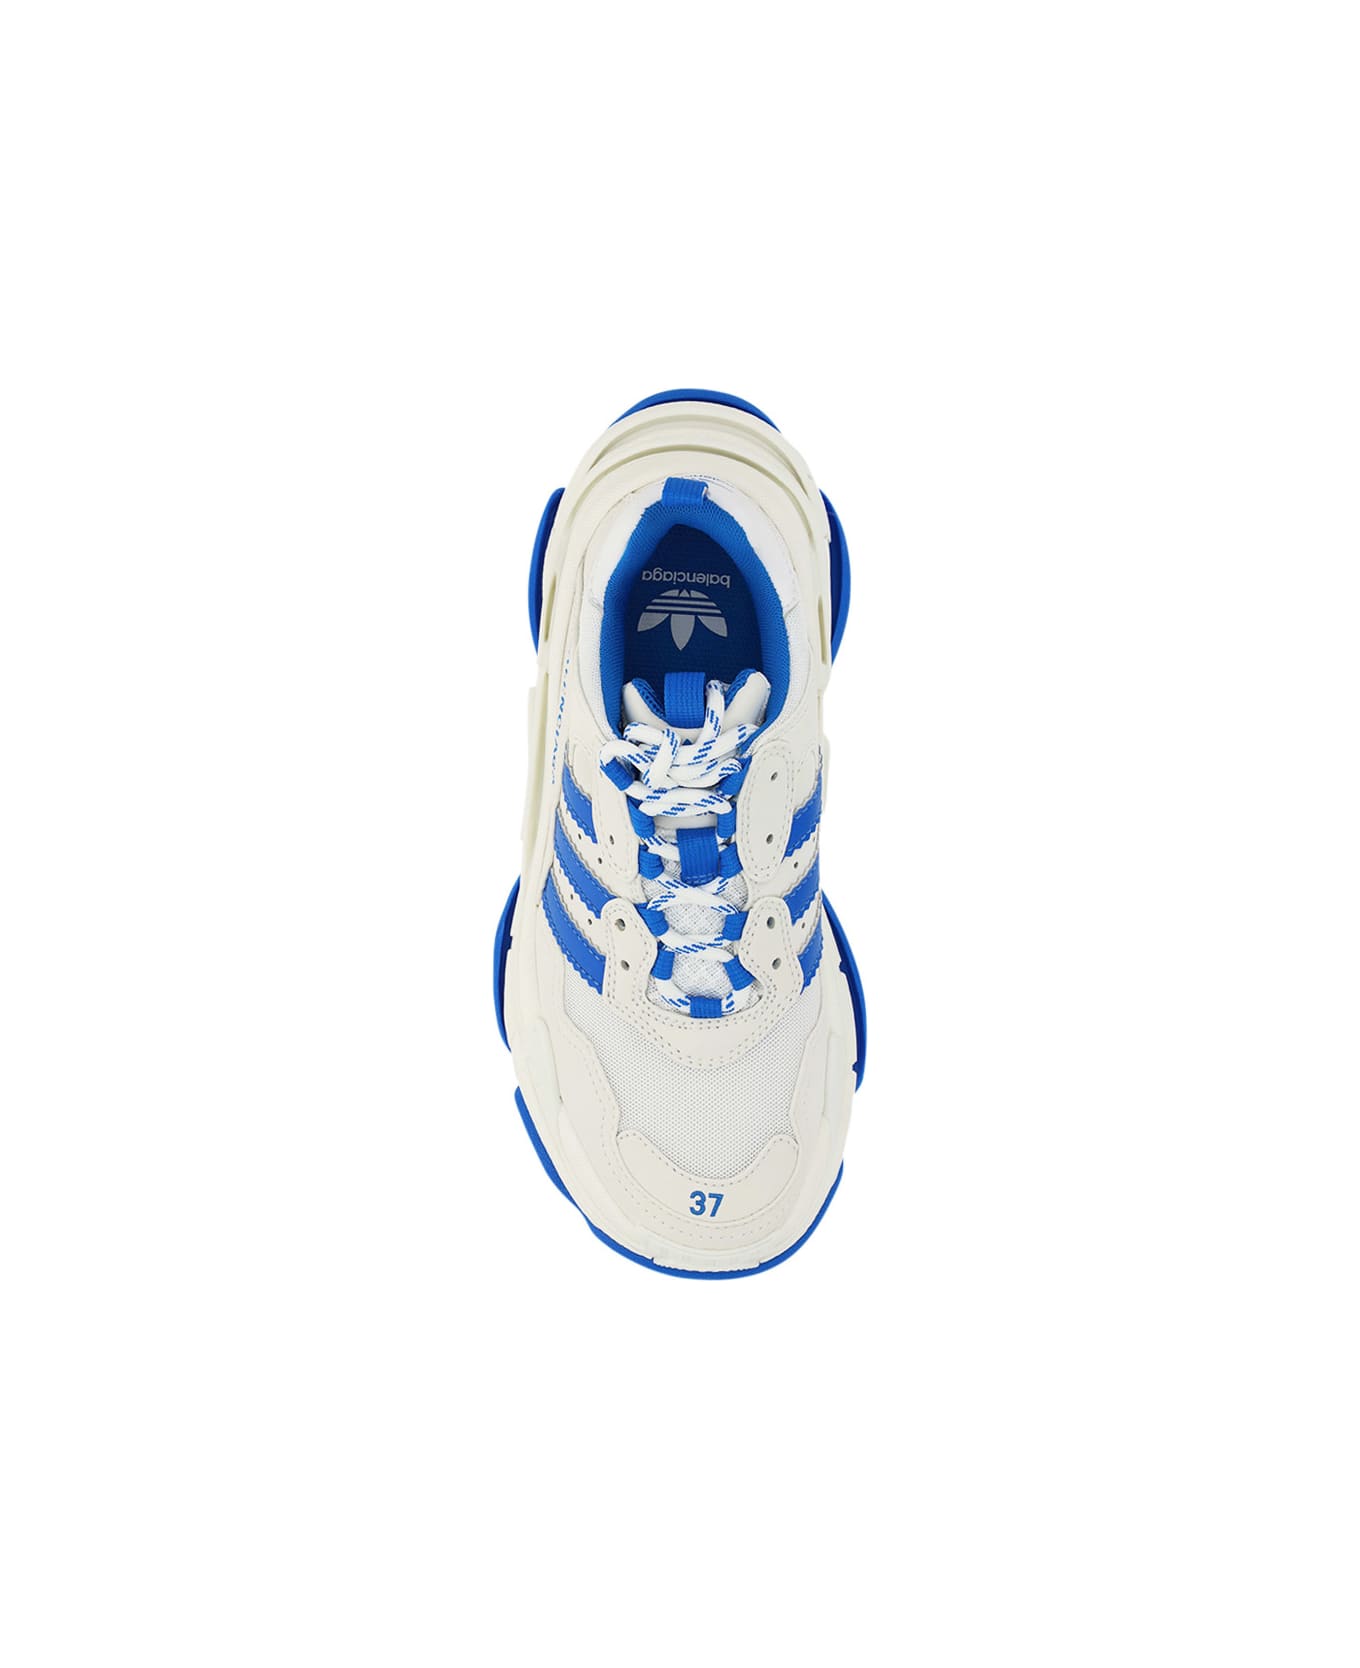 Balenciaga X Adidas Triple- S Sneakers - White スニーカー